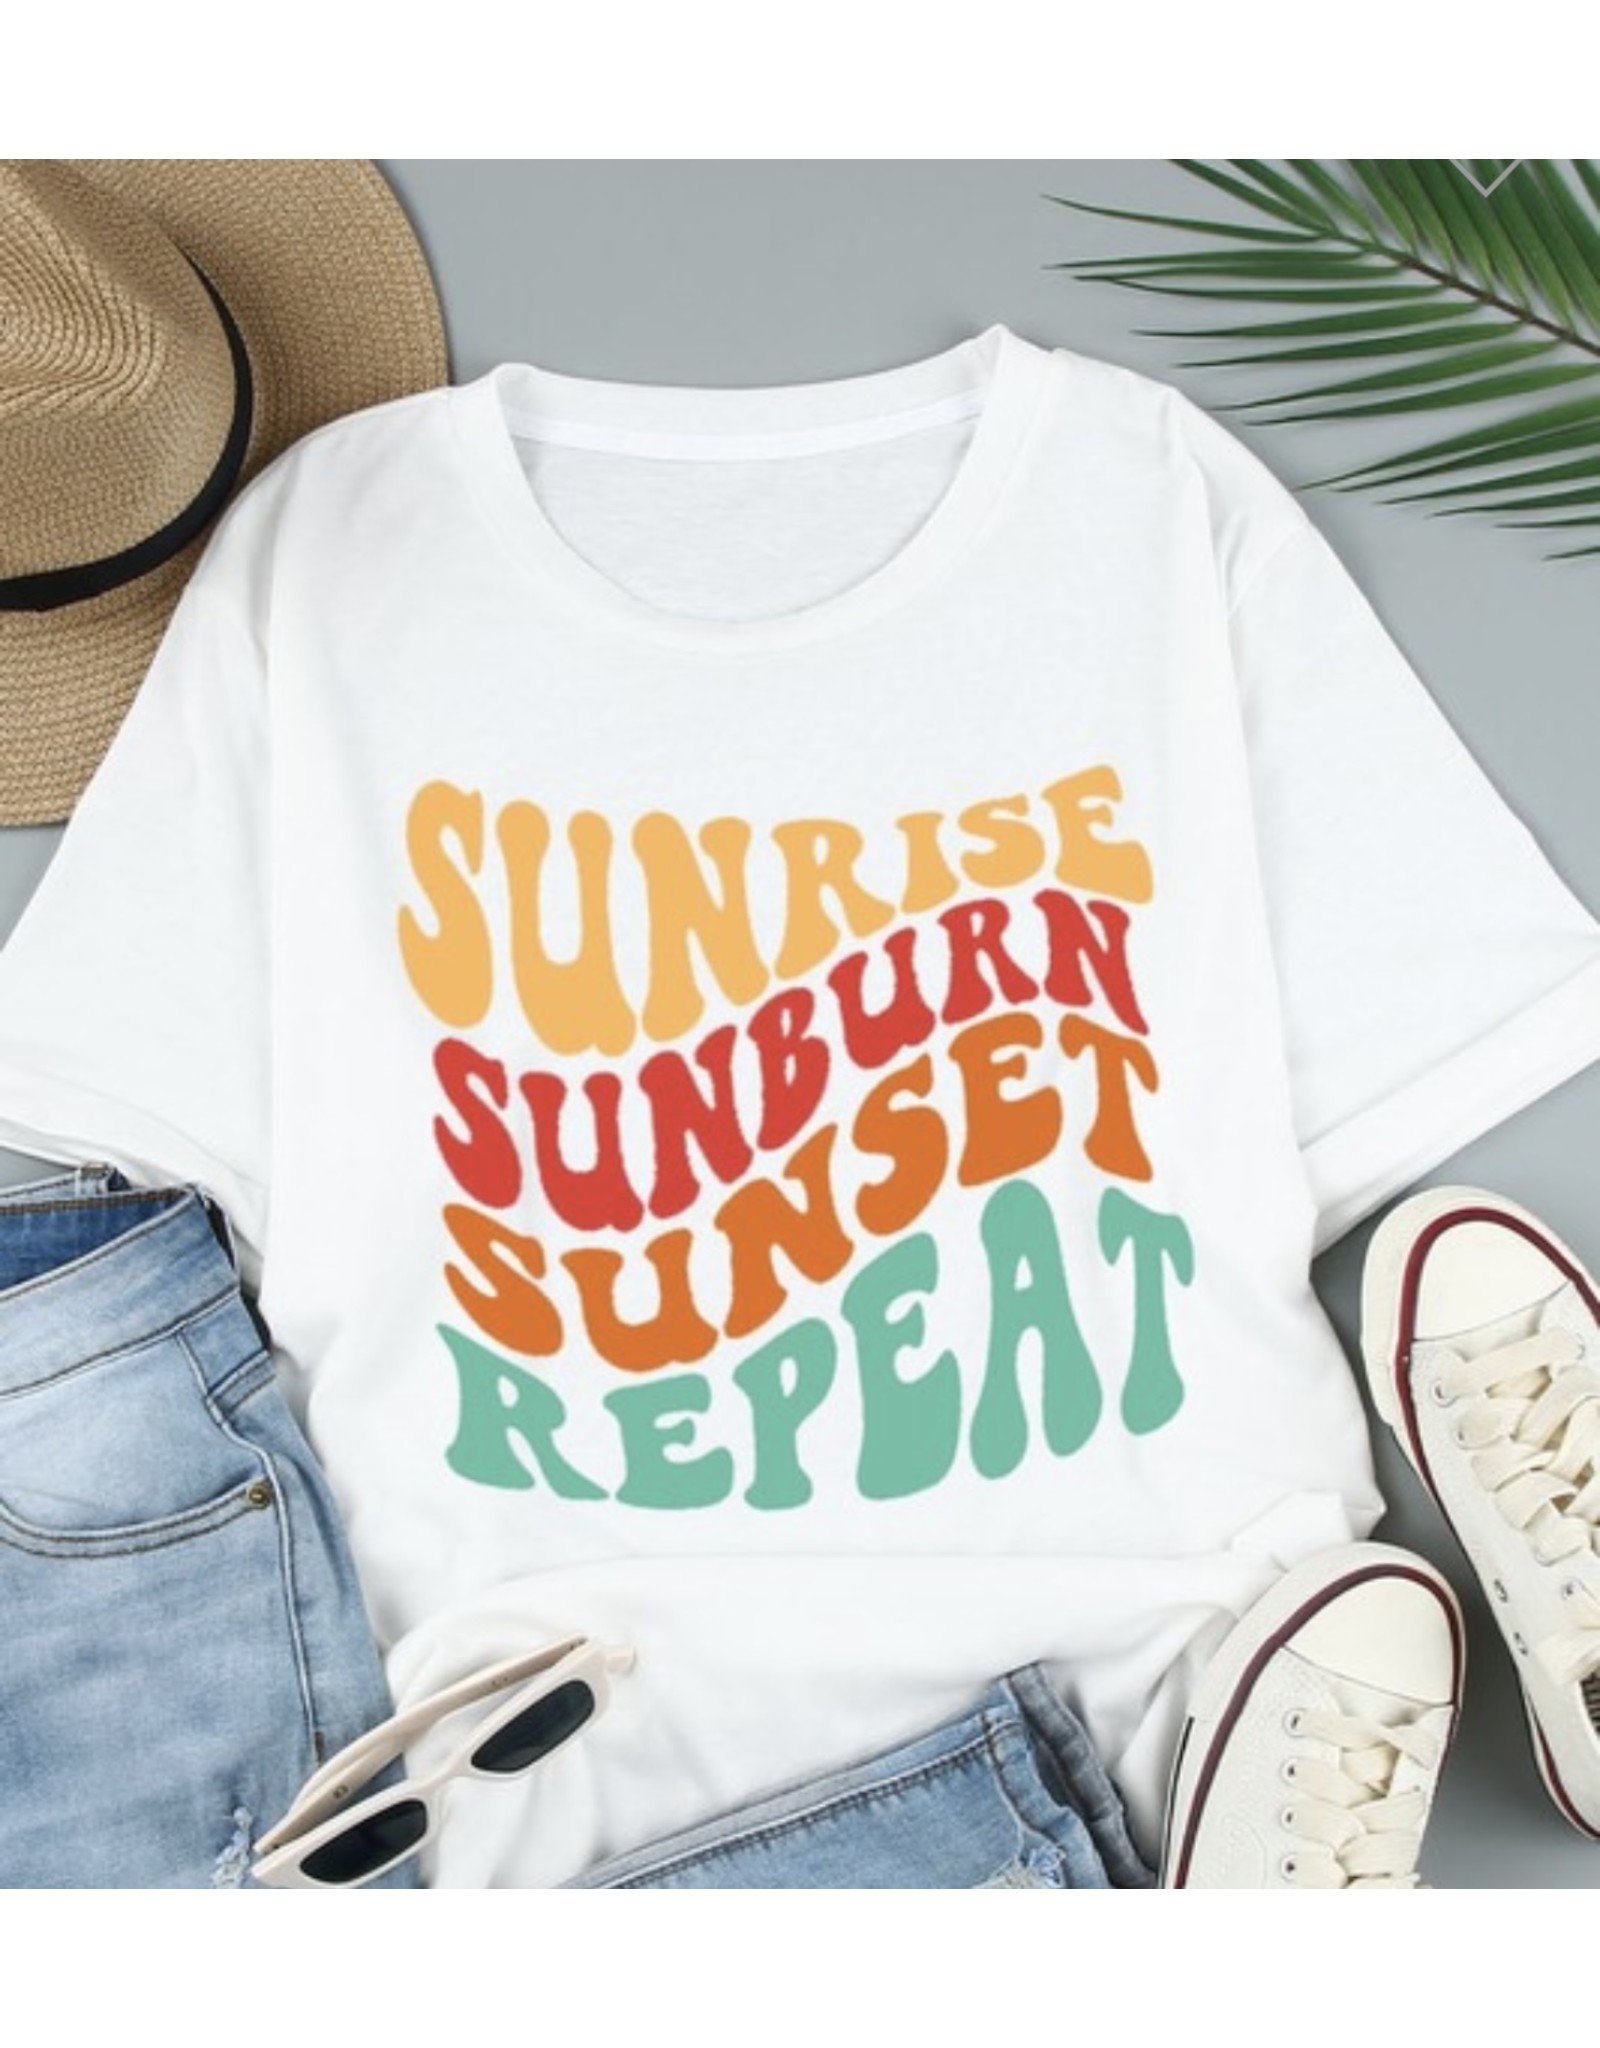 Sunrise, Sunburn, Sunset, Repeat Graphic Tee - LA Trends Addict